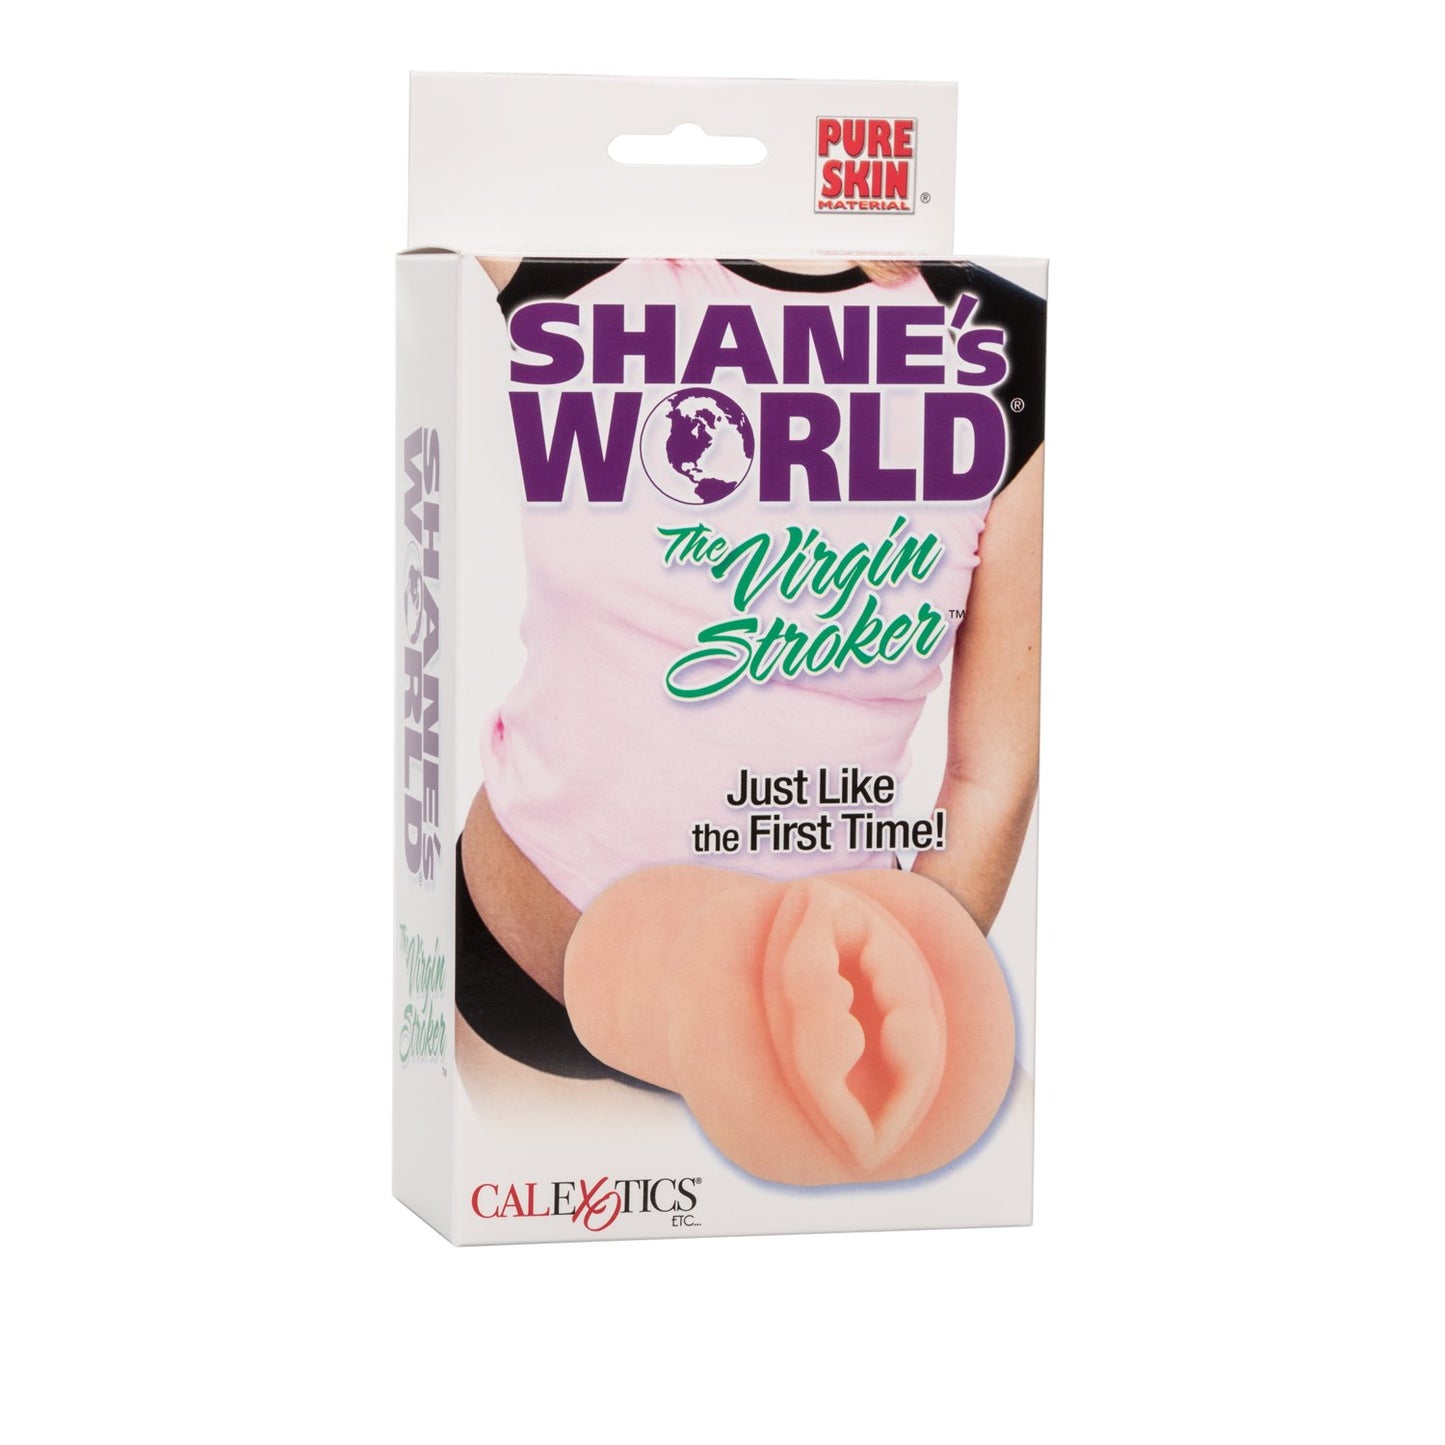 Shane's World The Virgin Stroker